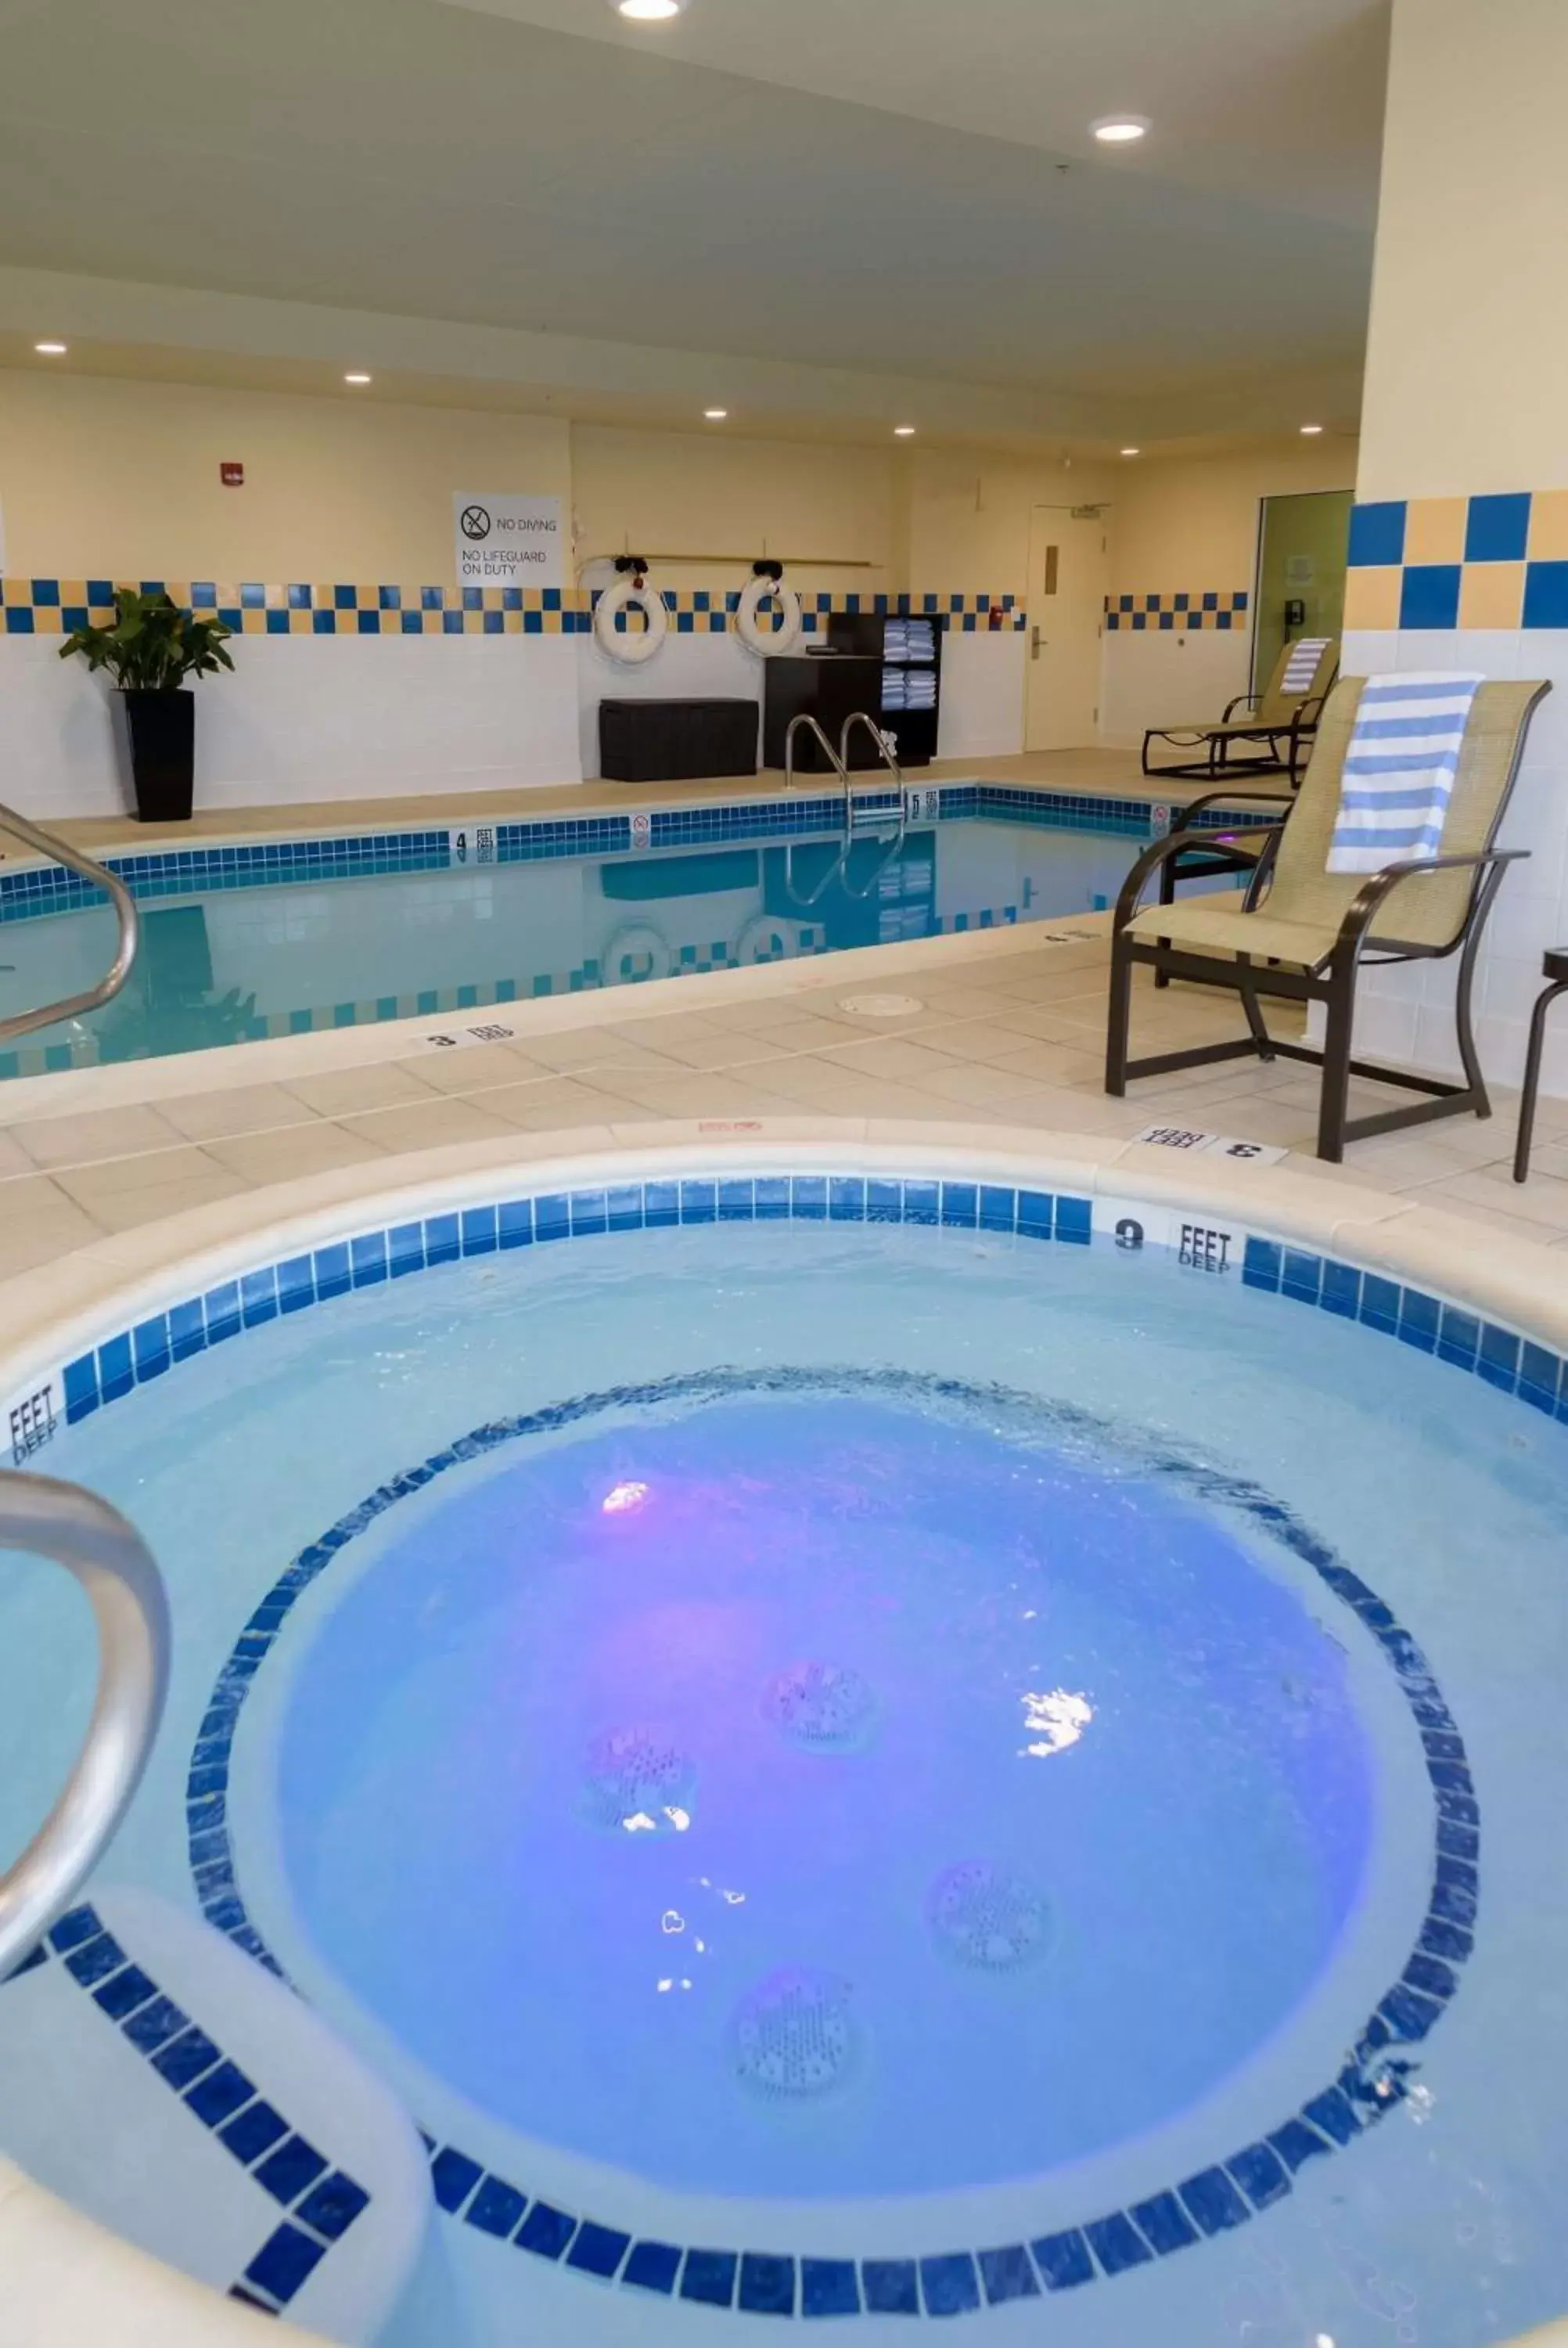 Swimming Pool in Hilton Garden Inn Kennett Square